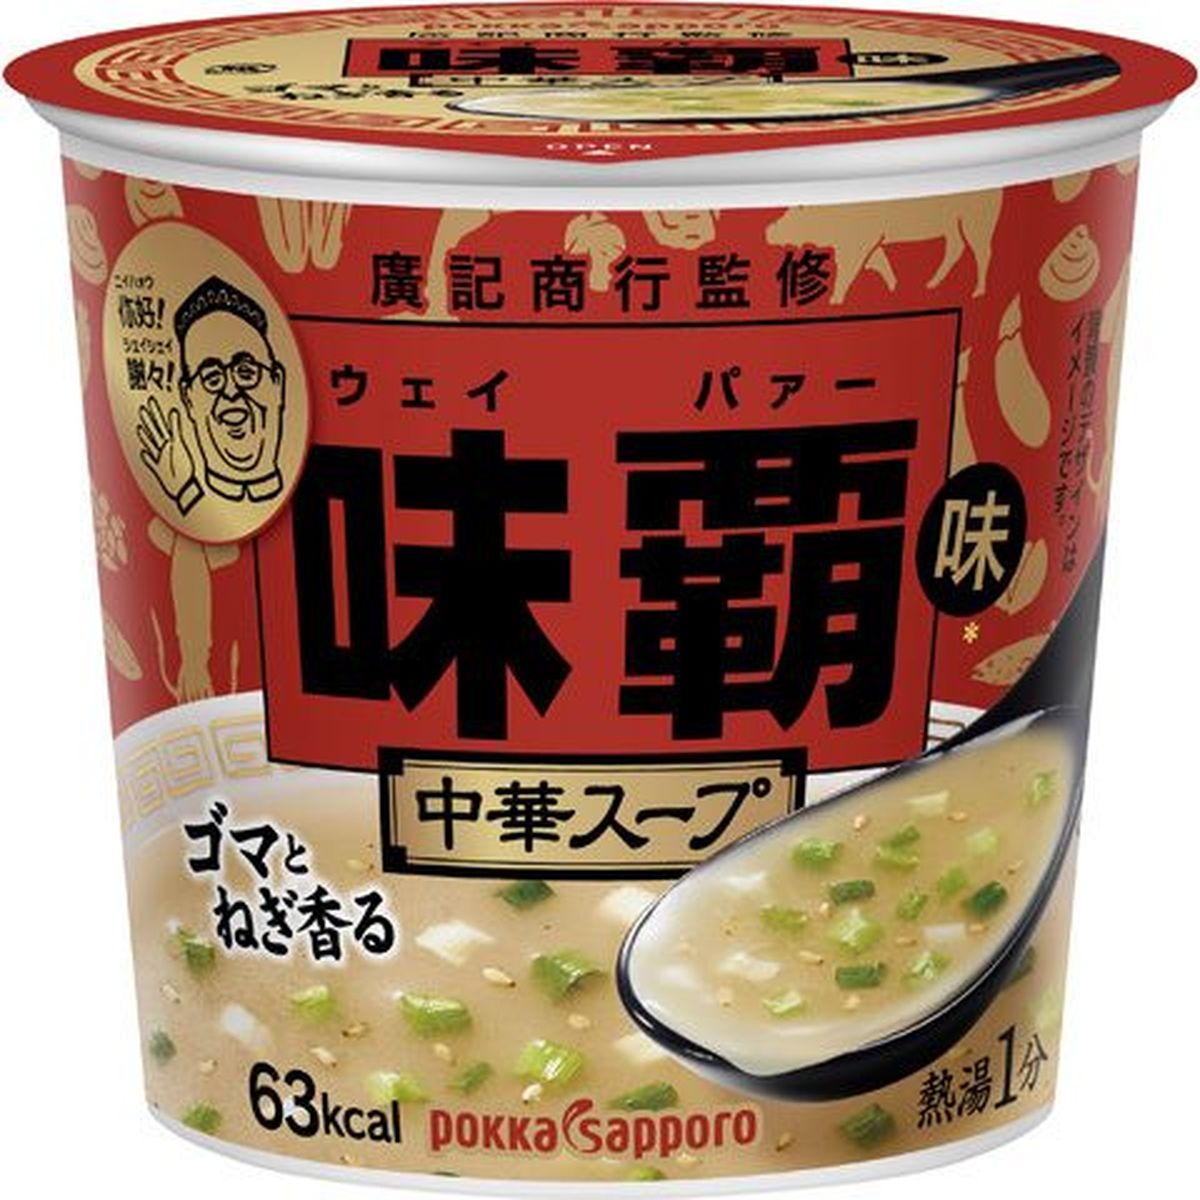 【6個入リ】ポッカサッポロ 味覇味中華スープ カップ 17.1g